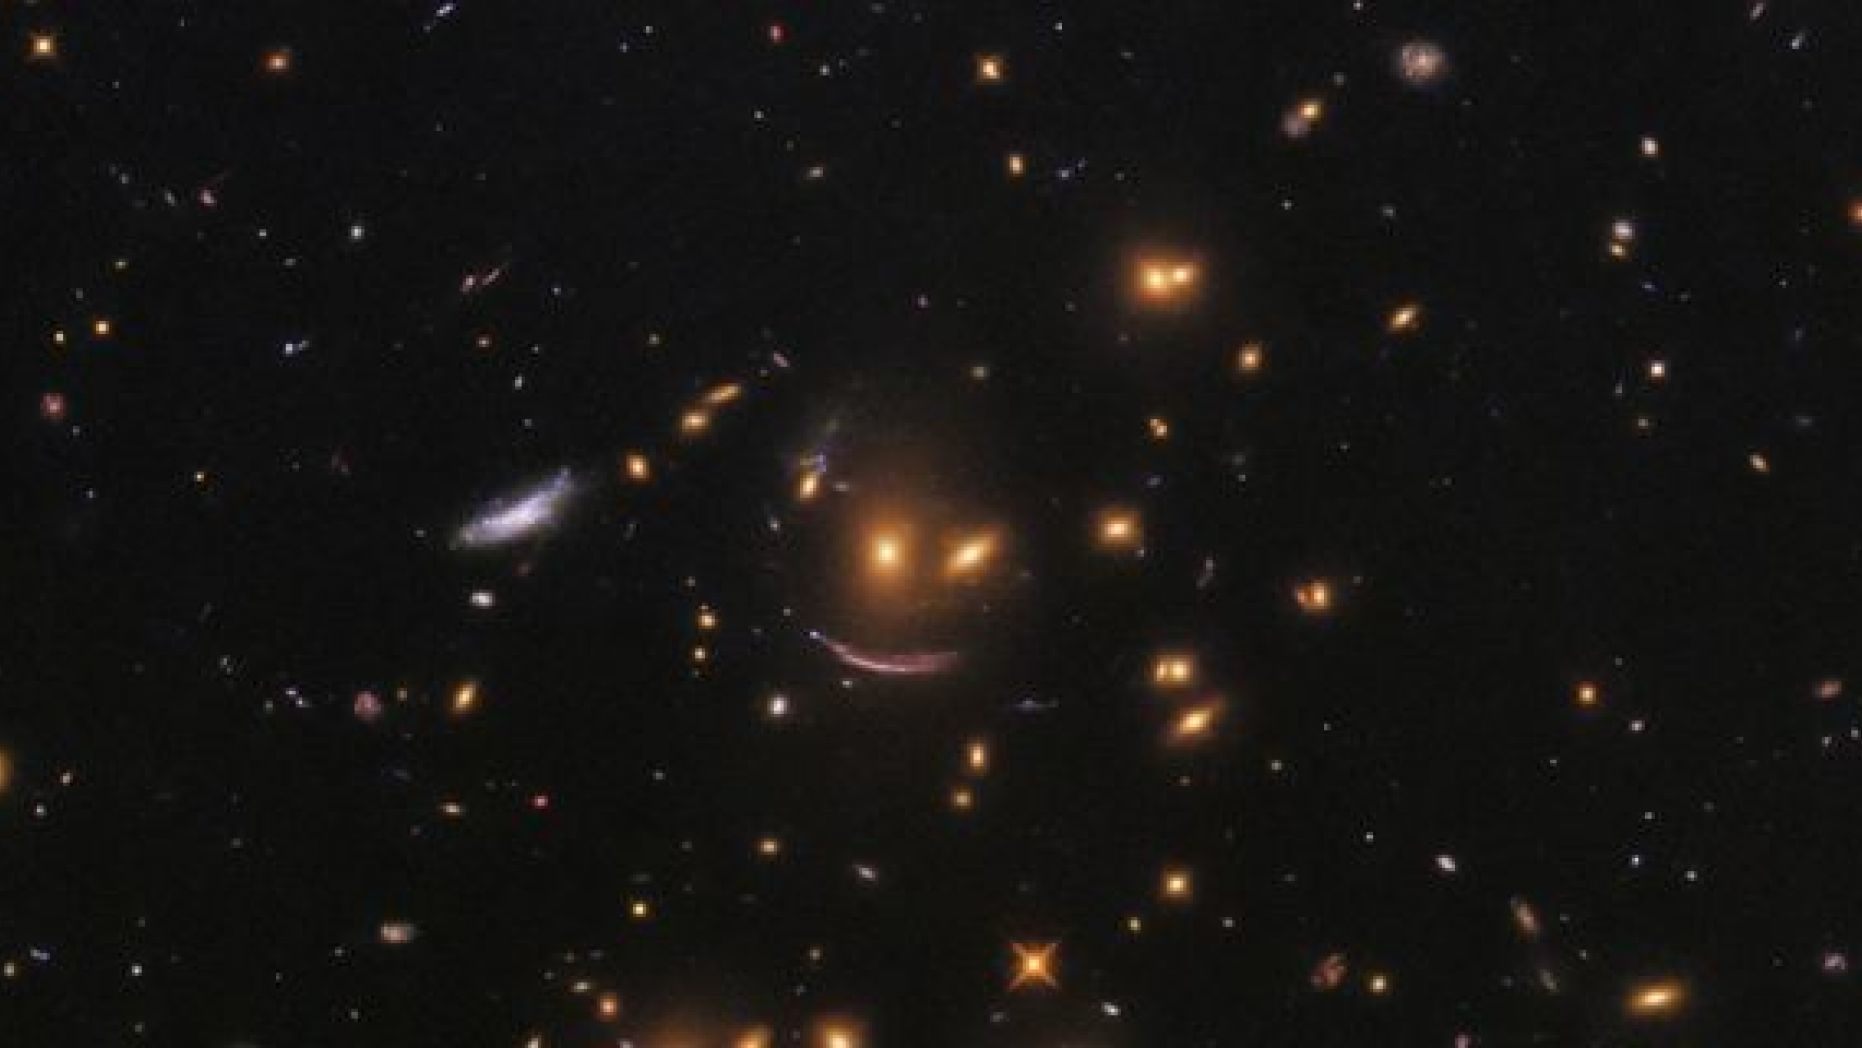  Image credit: NASA / ESA / Hubble / Judy Schmidt